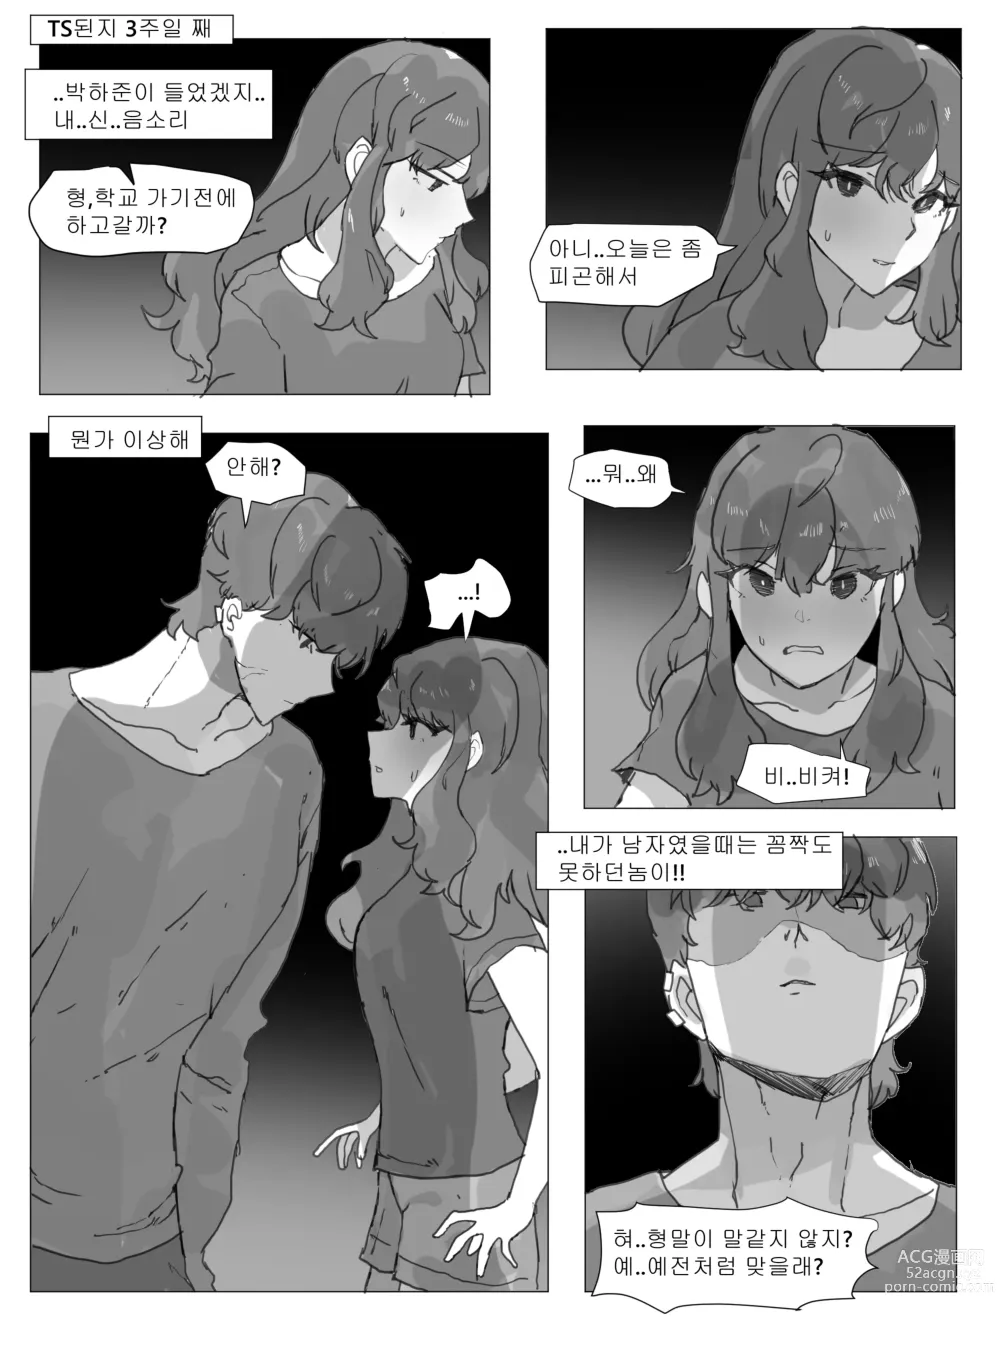 Page 15 of doujinshi 어느날 나는 TS 되었다 -1